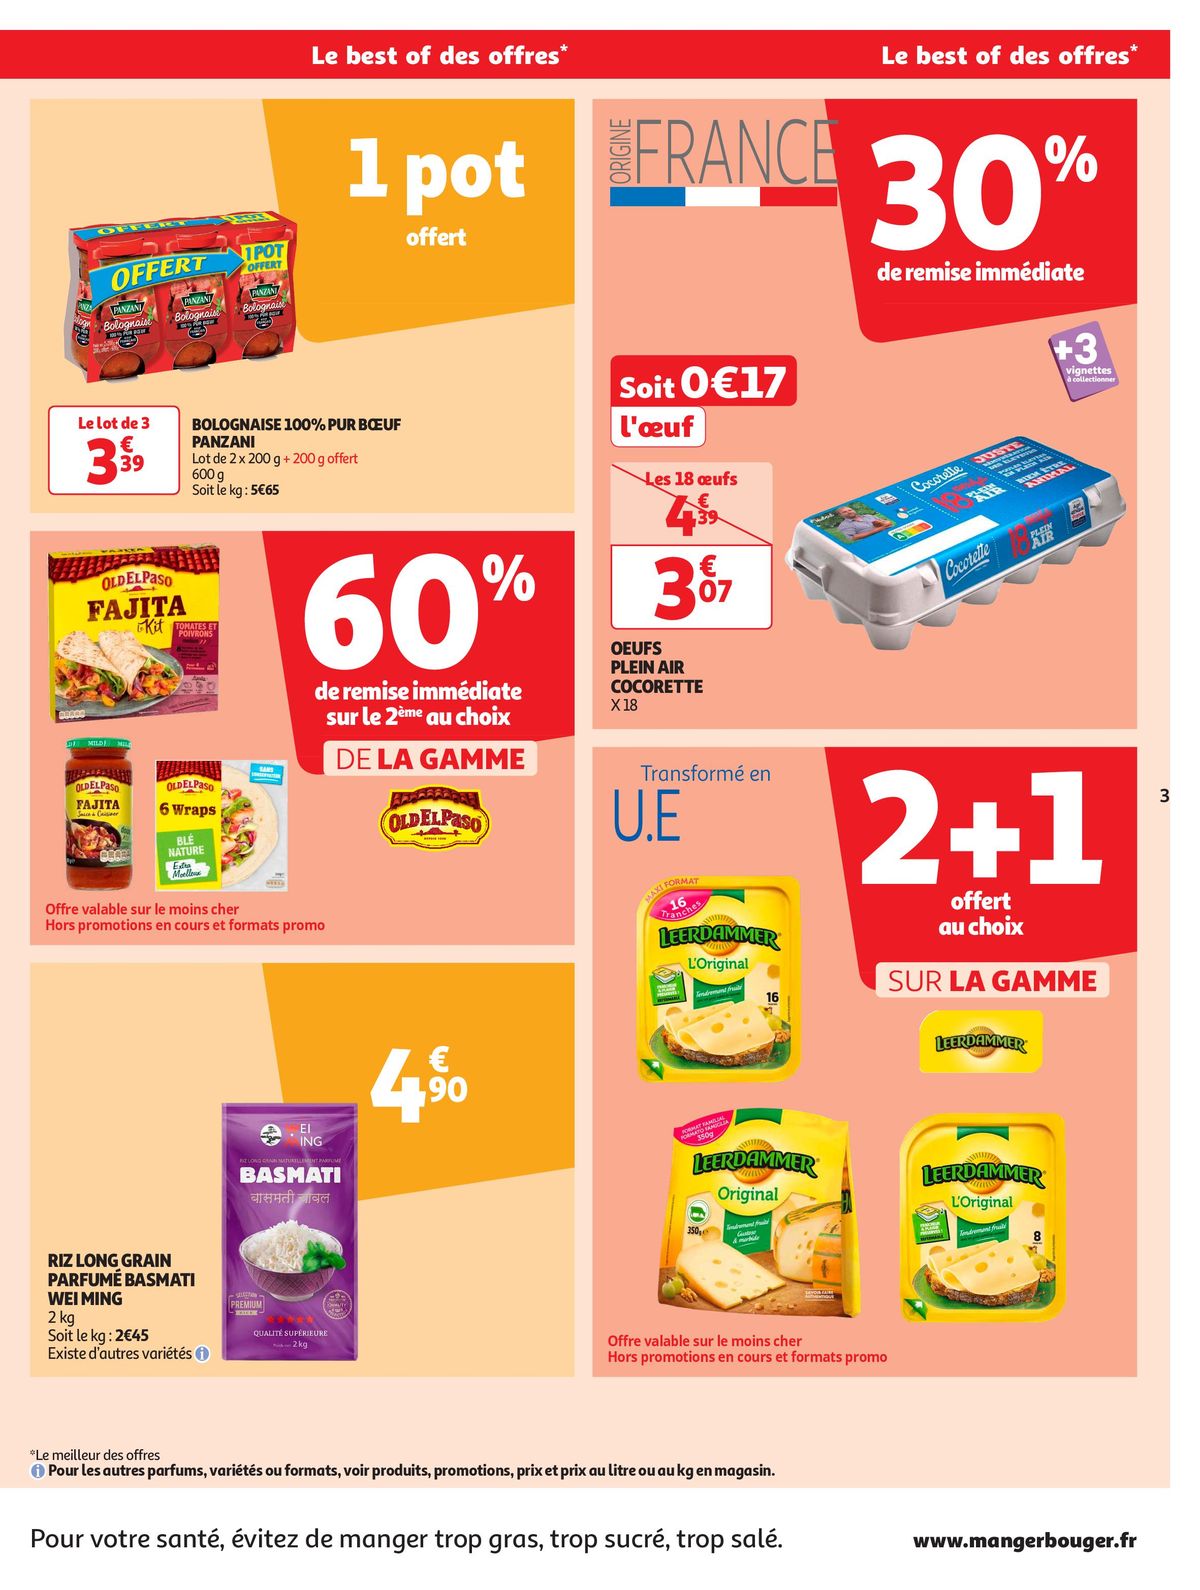 Catalogue Format XXL à prix XXS dans votre supermarché, page 00003